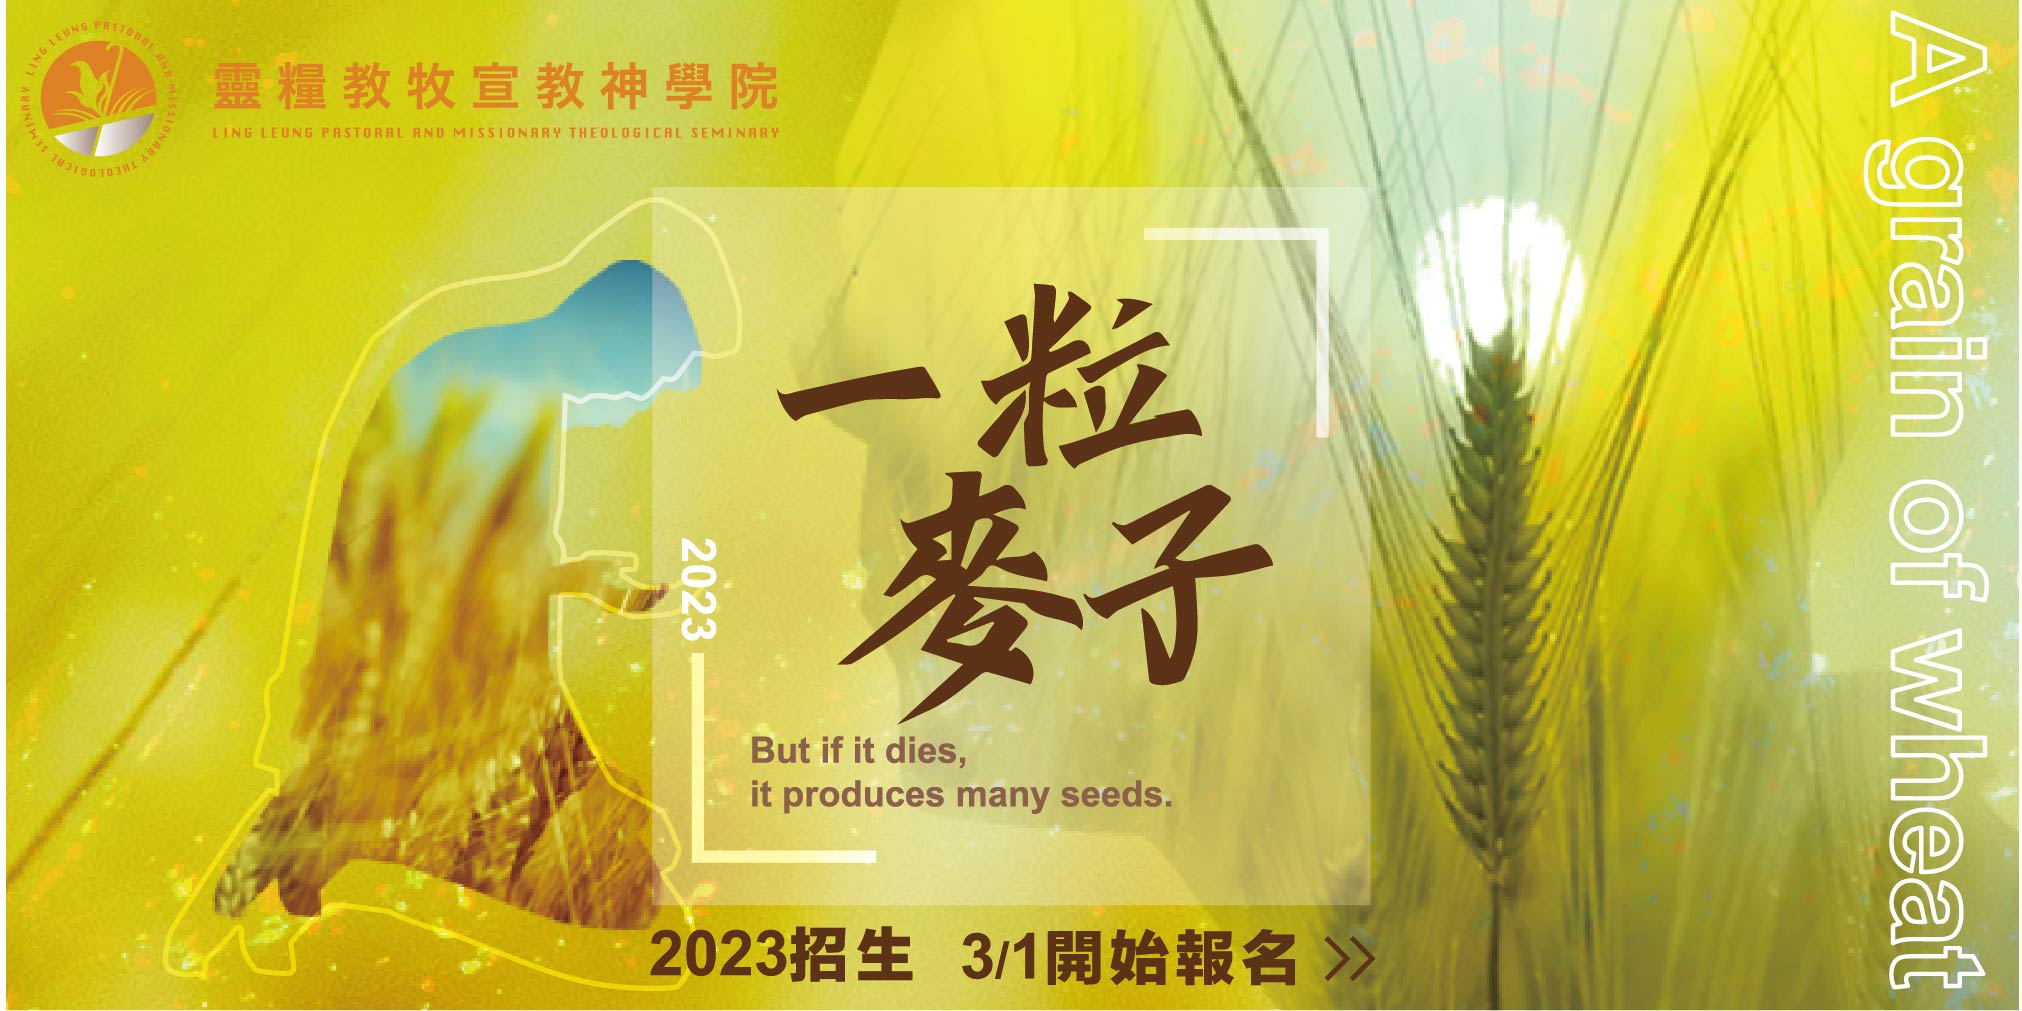 #66718 台北靈糧堂—靈糧神學院(3/20-26)底部廣告